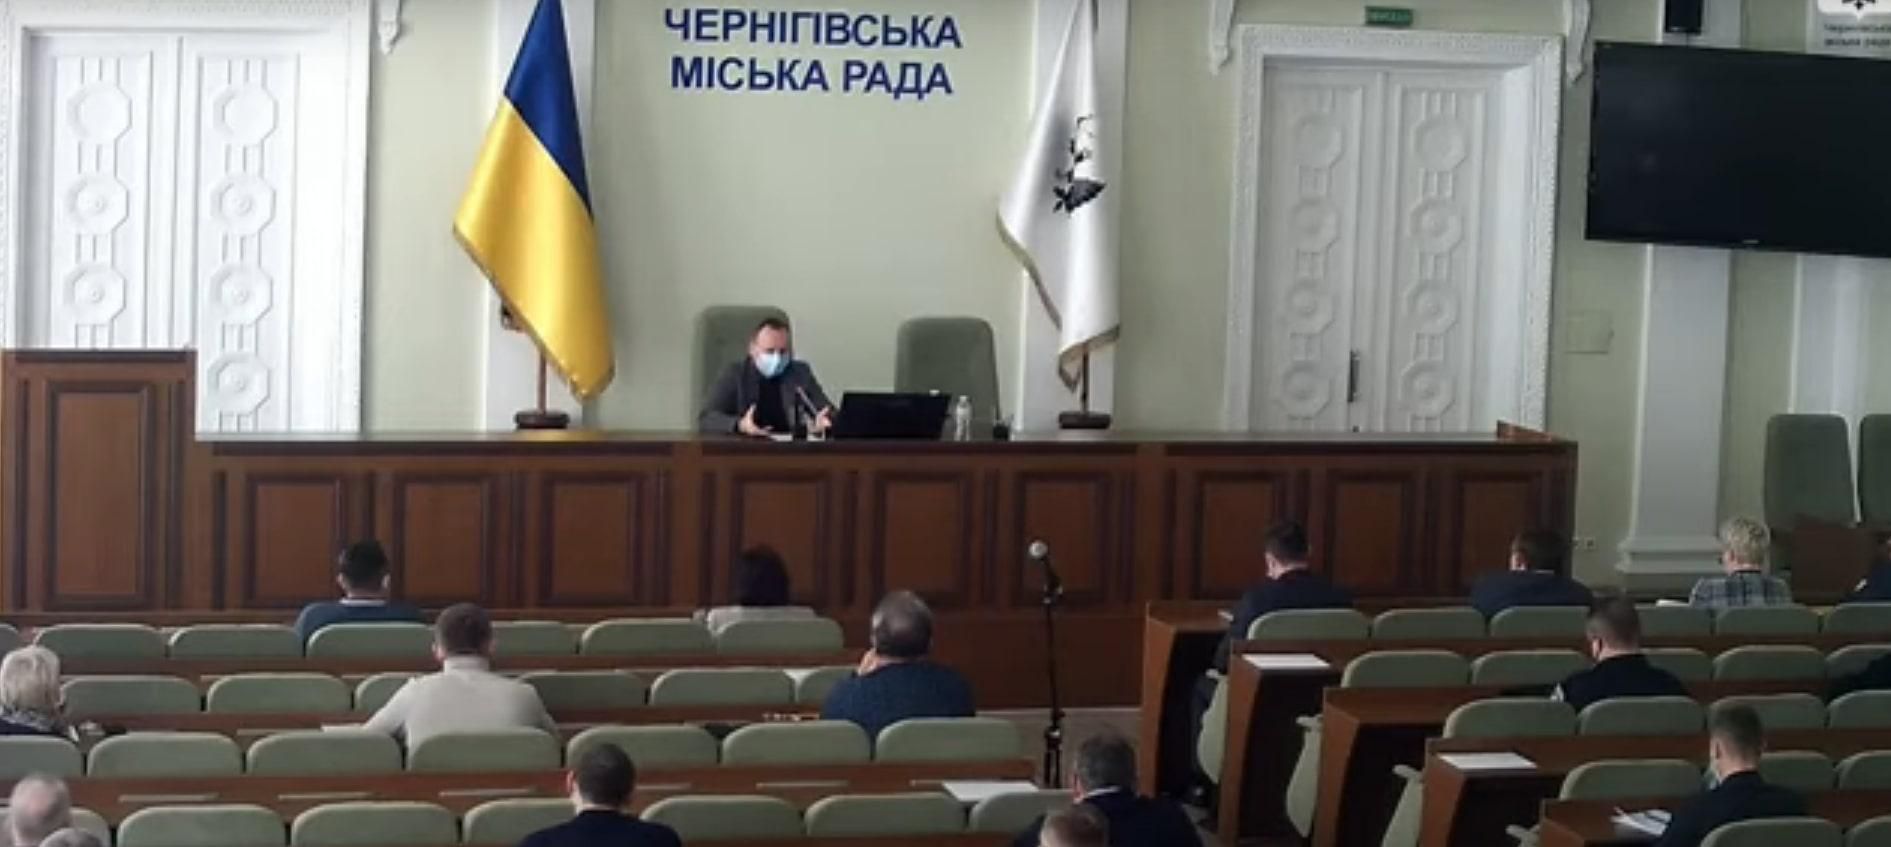 Мэр Чернигова назвал "фигней" намерение Украины вступить в ЕС и НАТО